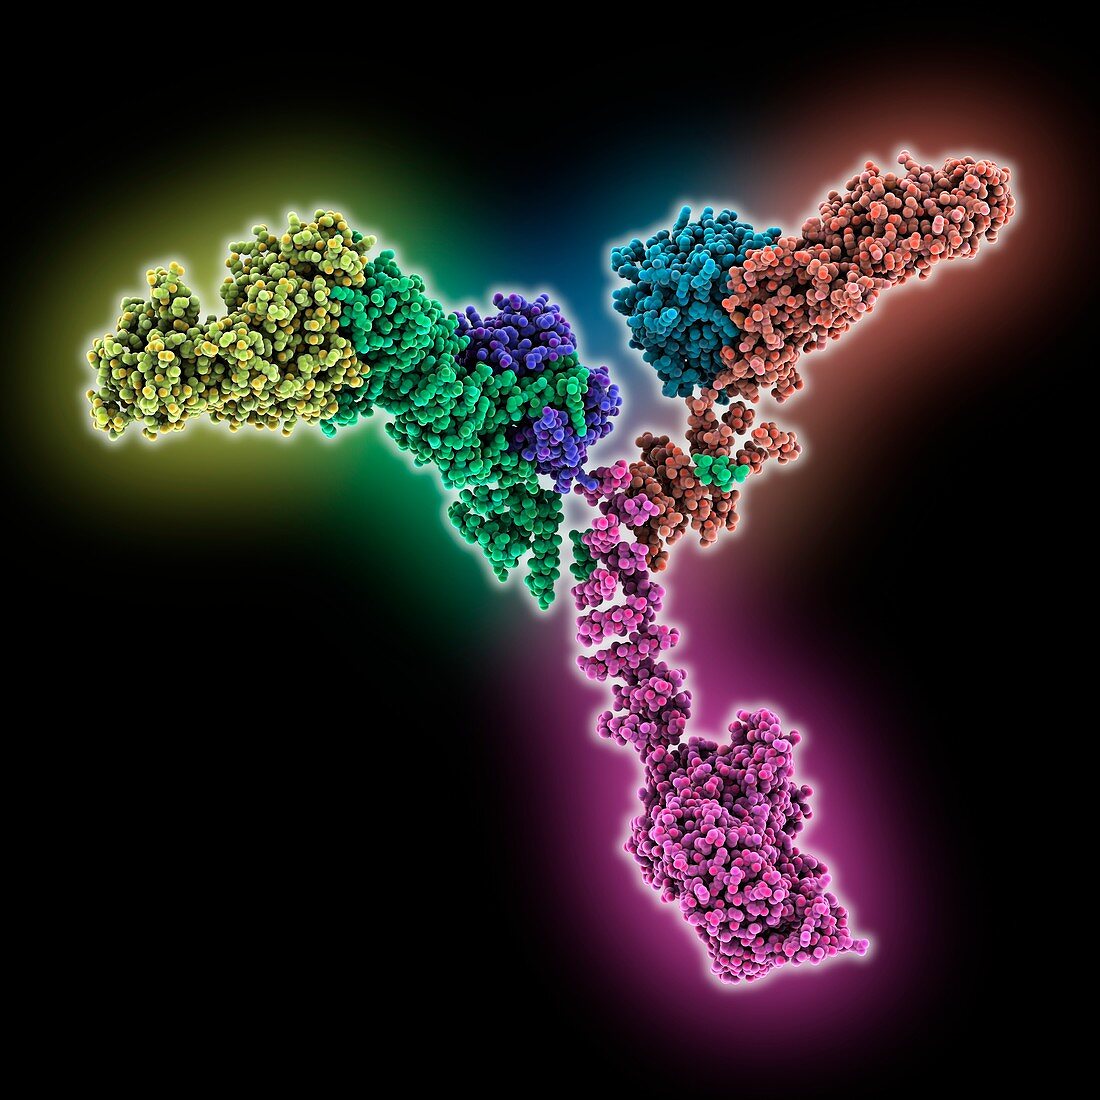 Yeast coat nucleoporin complex, molecular model